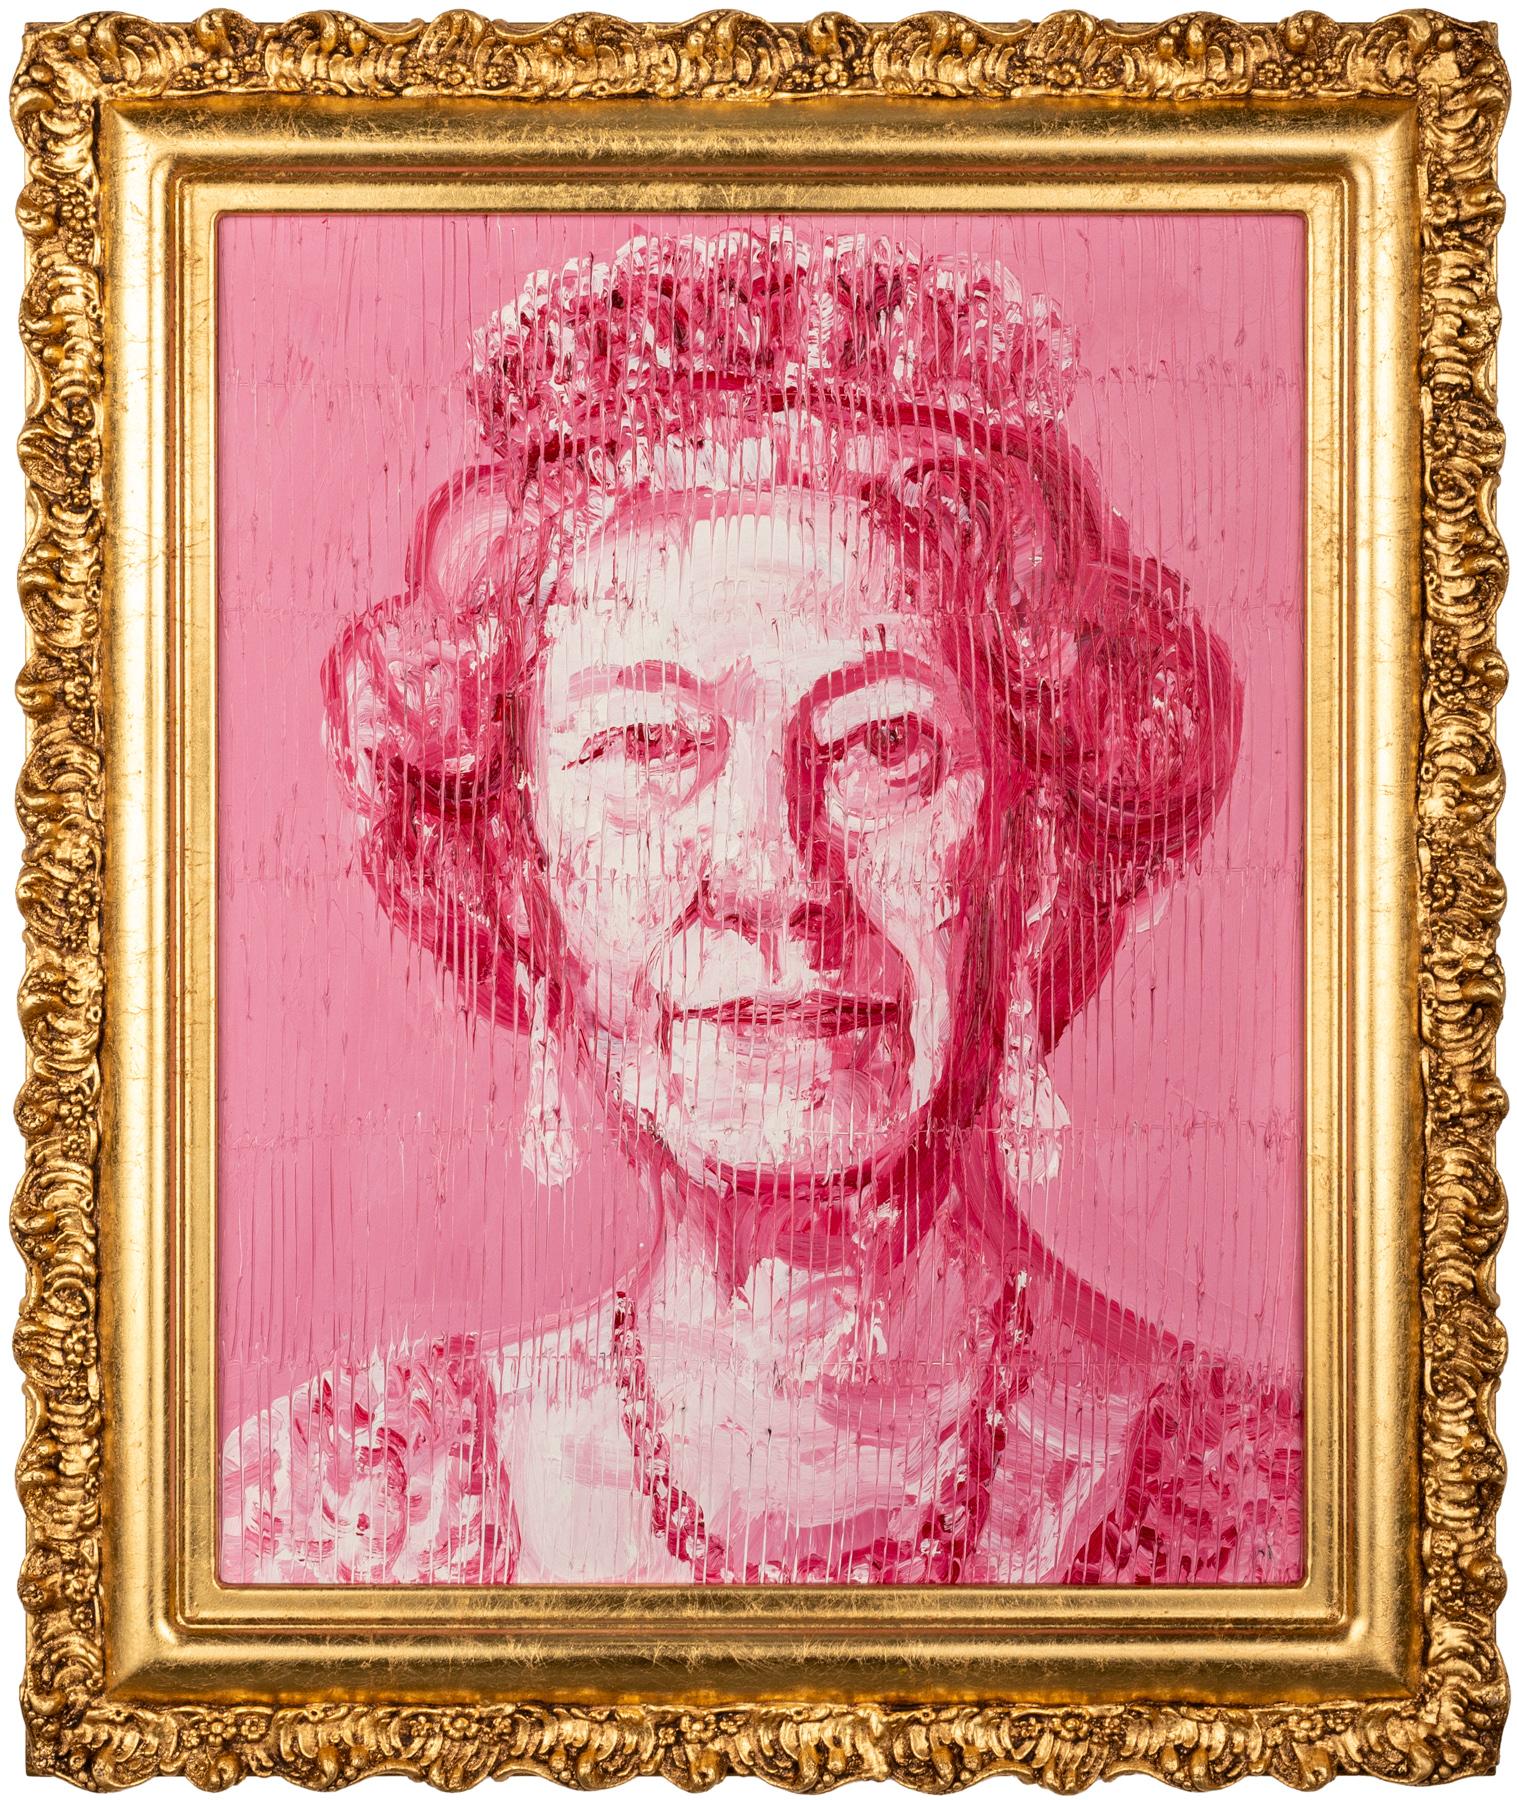 Hunt Slonem Portrait Painting – Ihre Majestät Königin Elizabeth